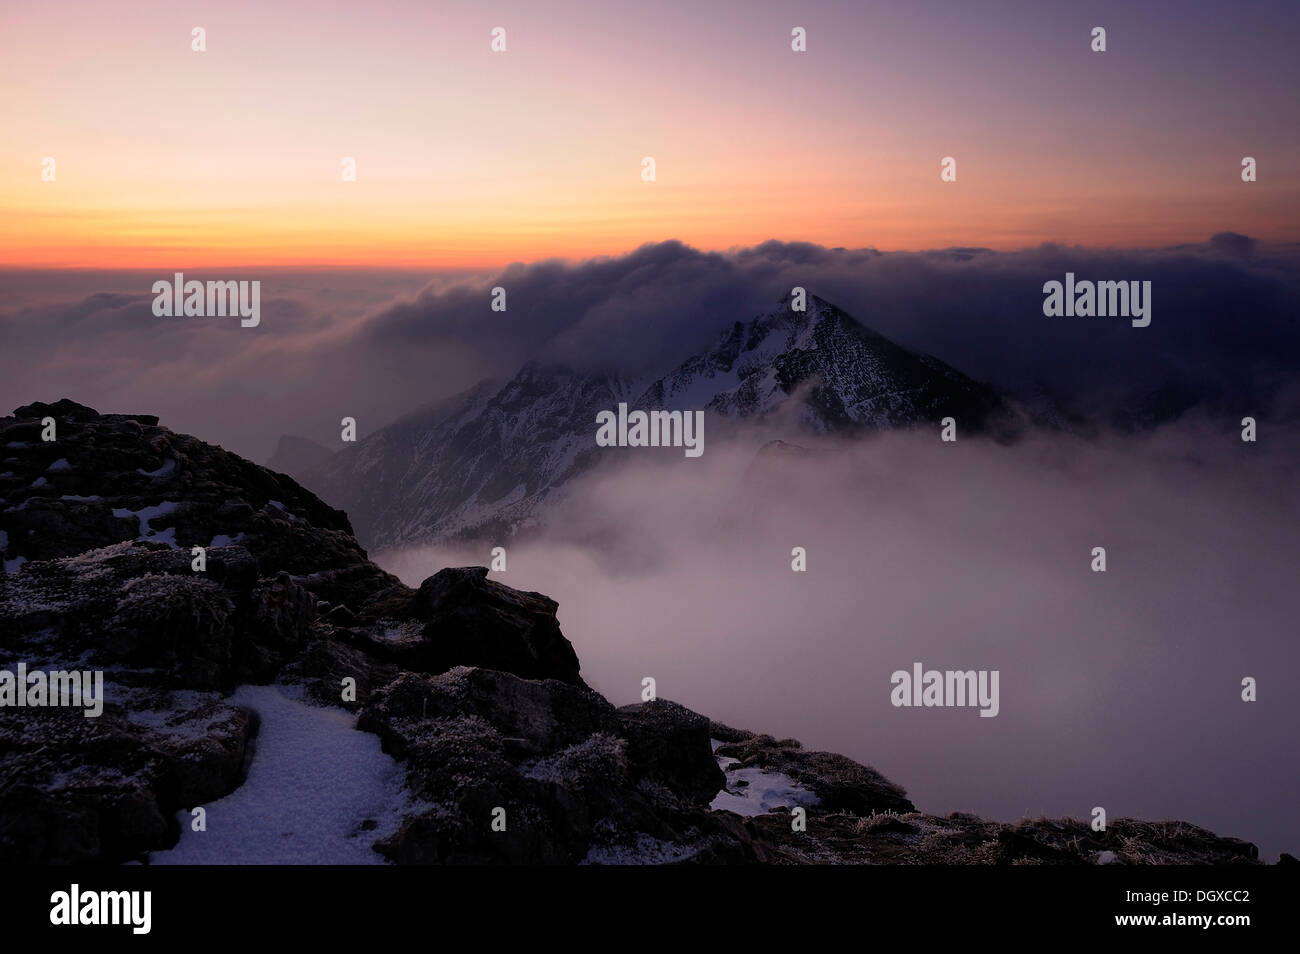 Des pics de montagne avec les nuages pendant heure magique, à l'aube, Graen, vallée Tannheimertal Ausserfern,, Tyrol, Autriche, Europe Banque D'Images